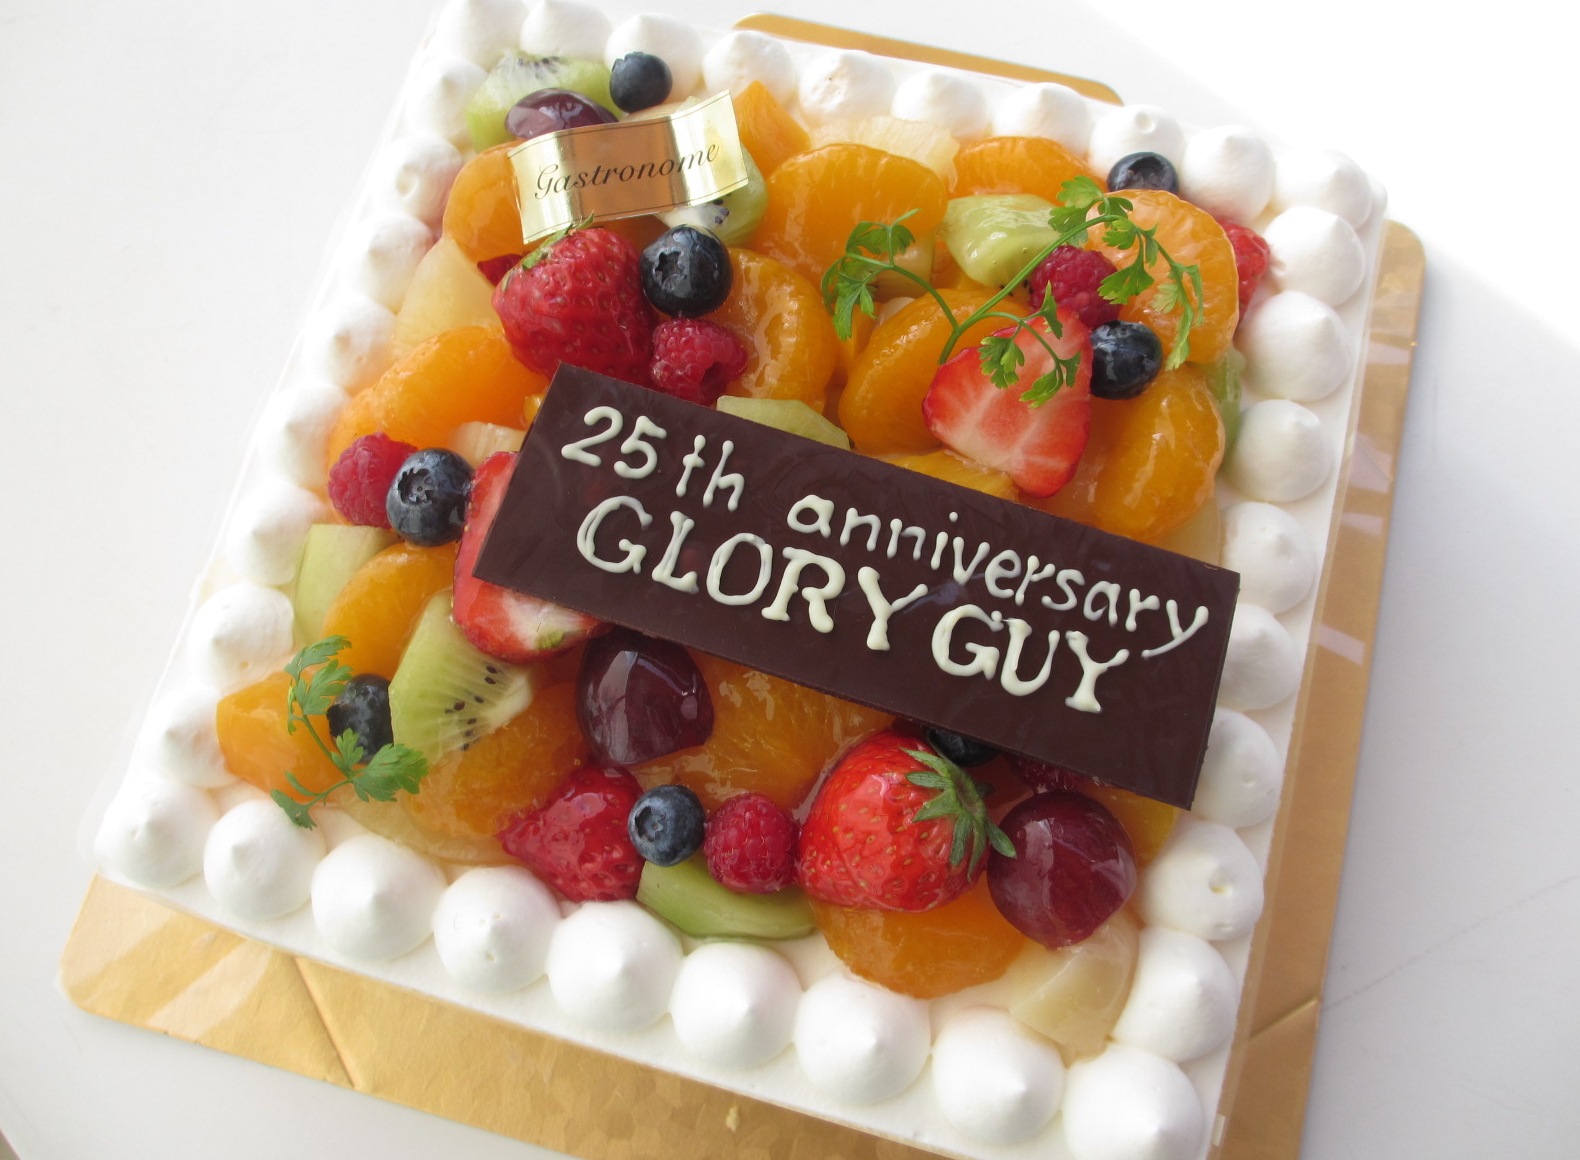 http://www.gloryguy.jp/gloryguy/2015/03/21/035.JPG